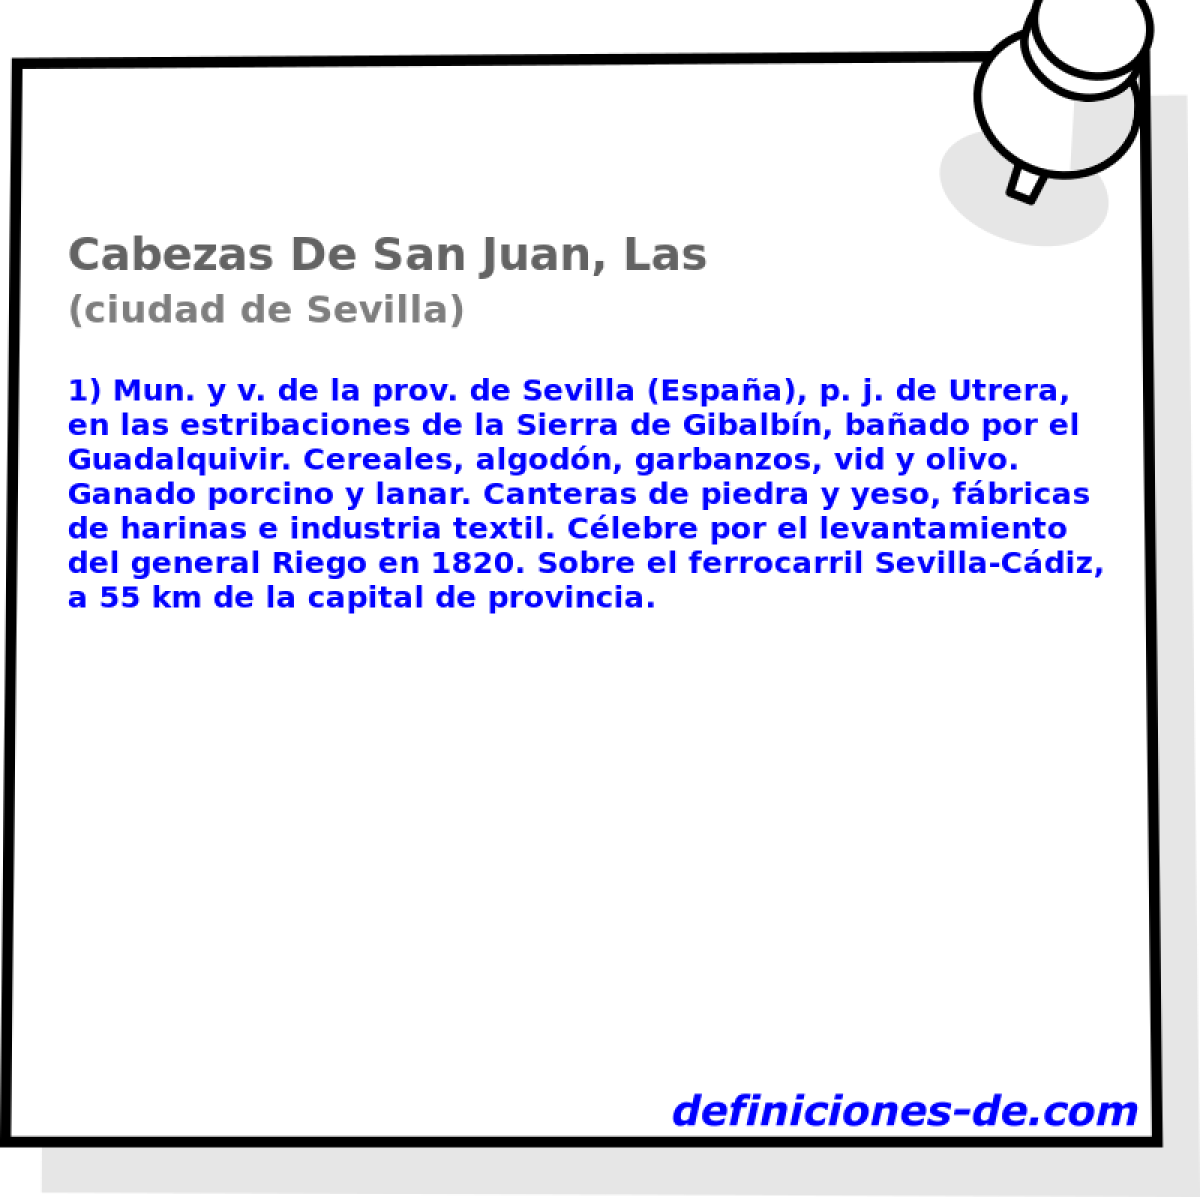 Cabezas De San Juan, Las (ciudad de Sevilla)